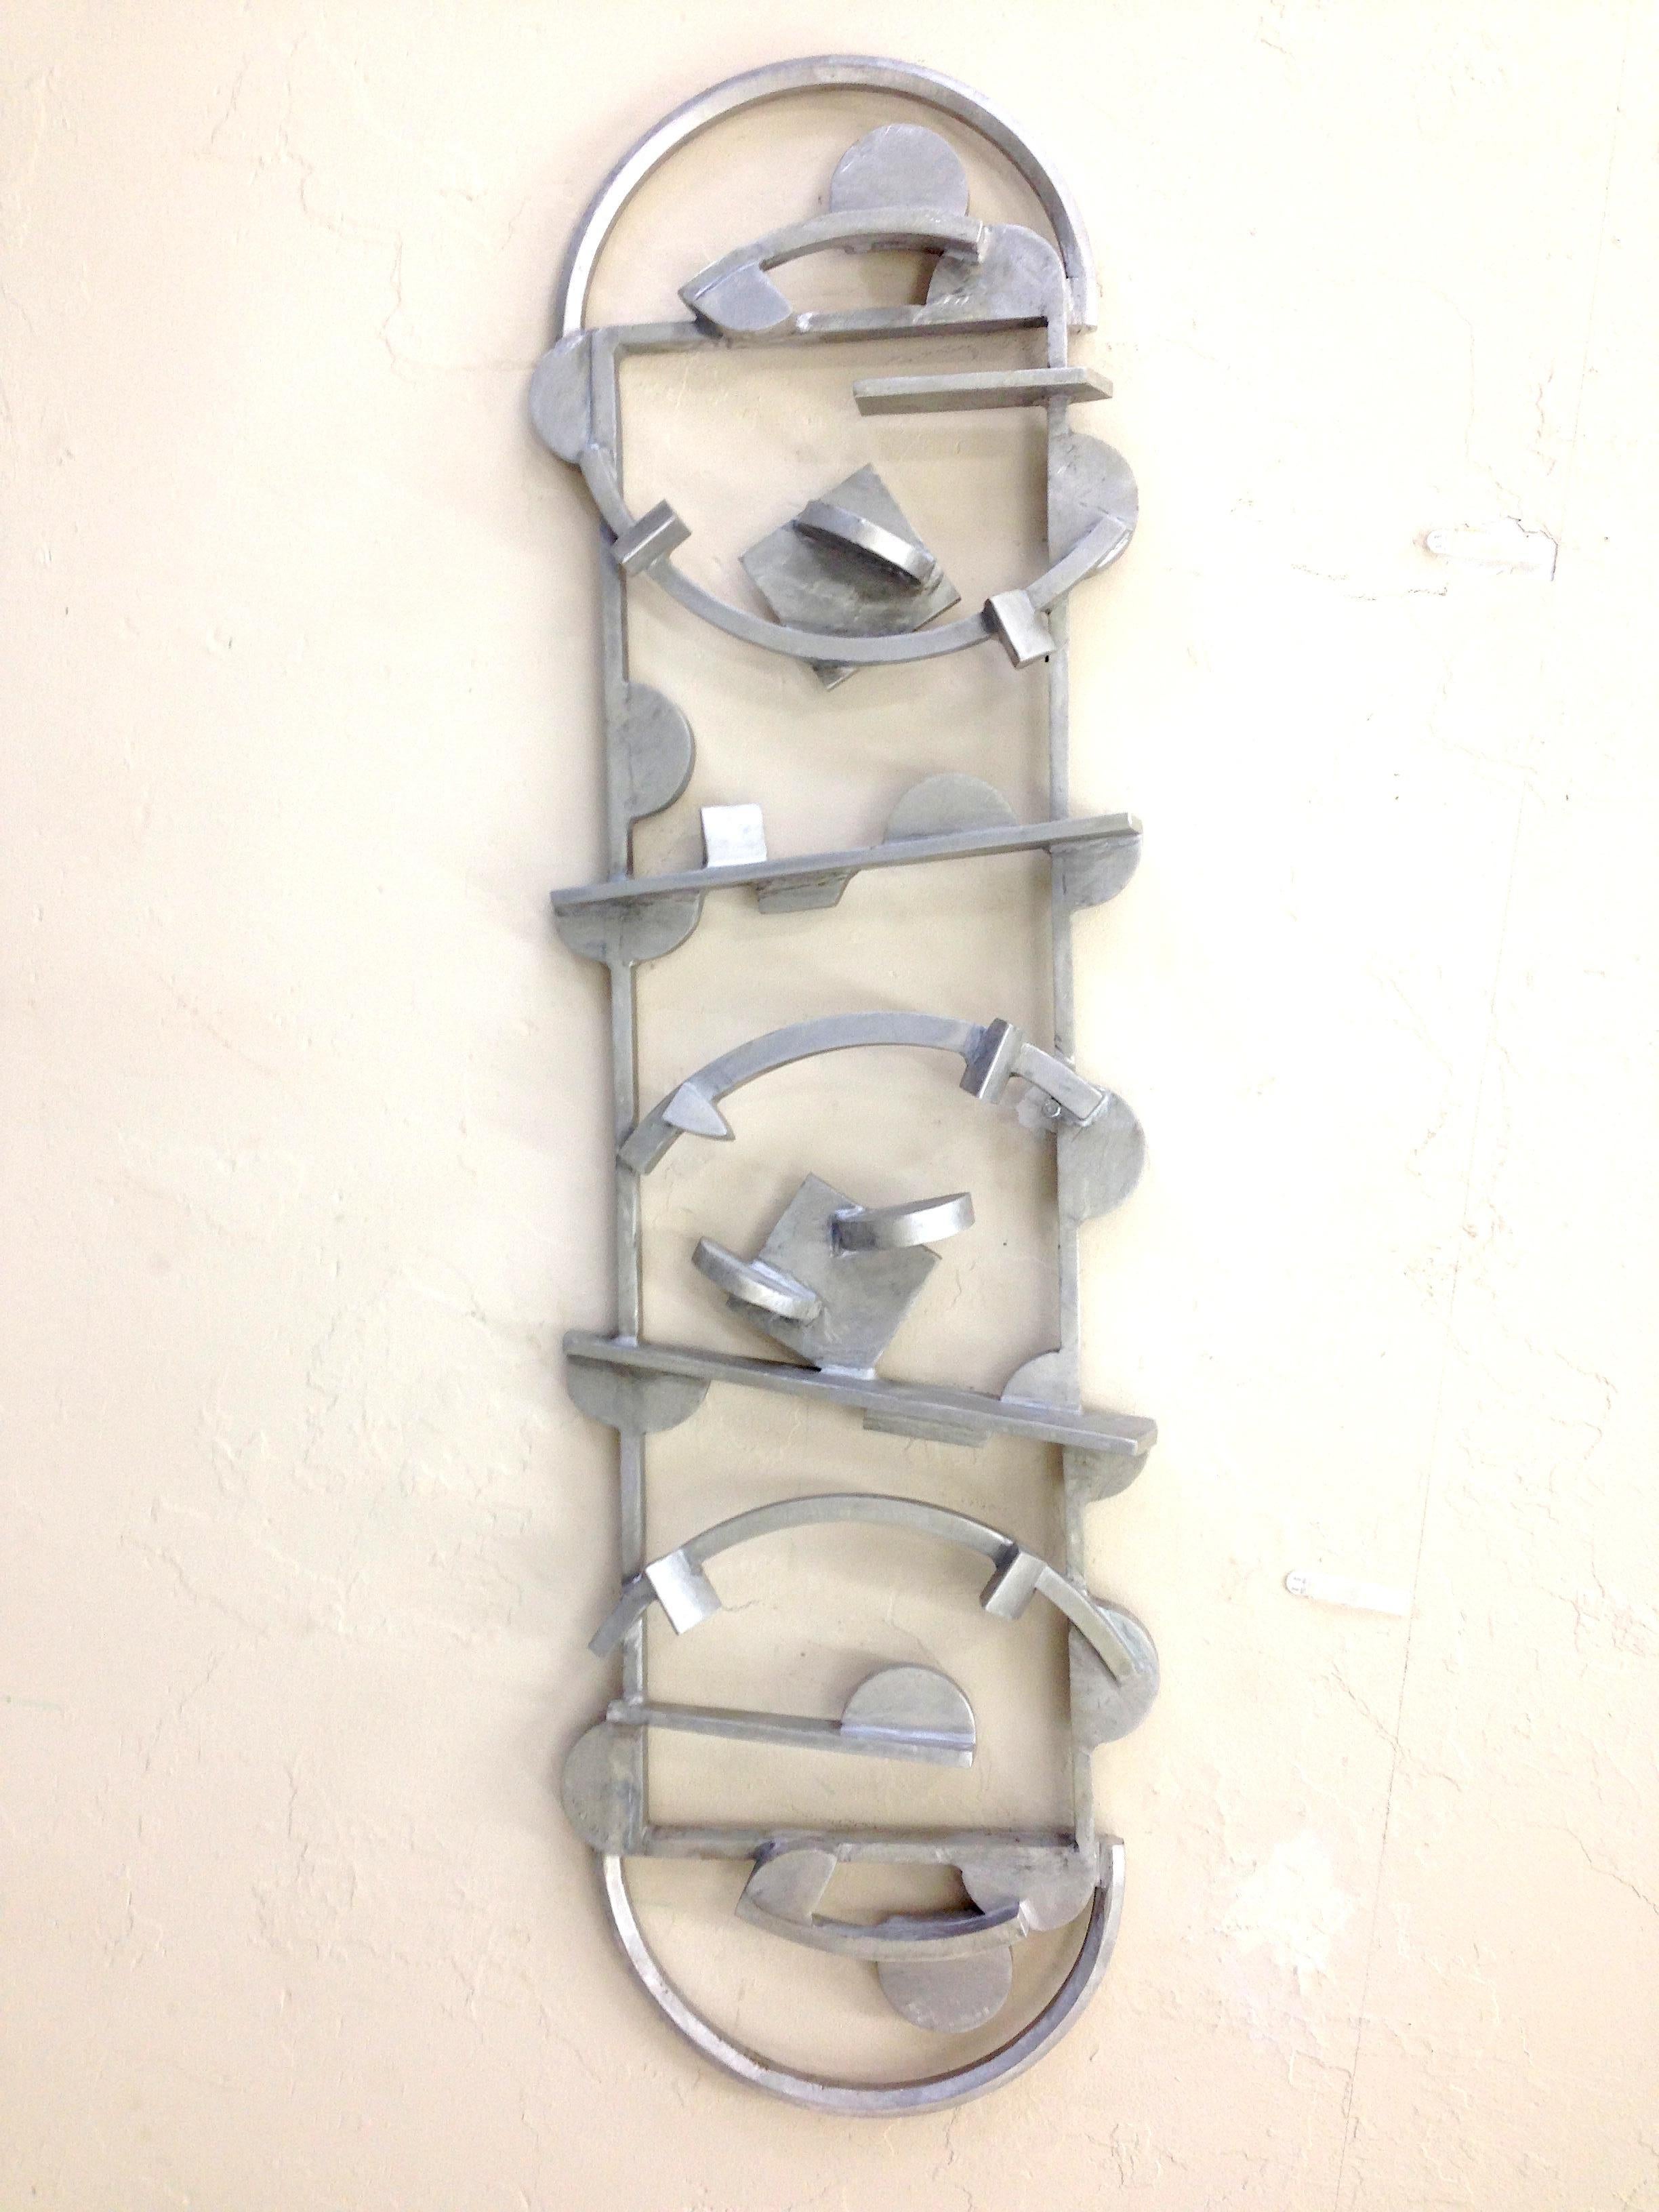 Aluminum Wall - Conceptual Sculpture by Joel Perlman